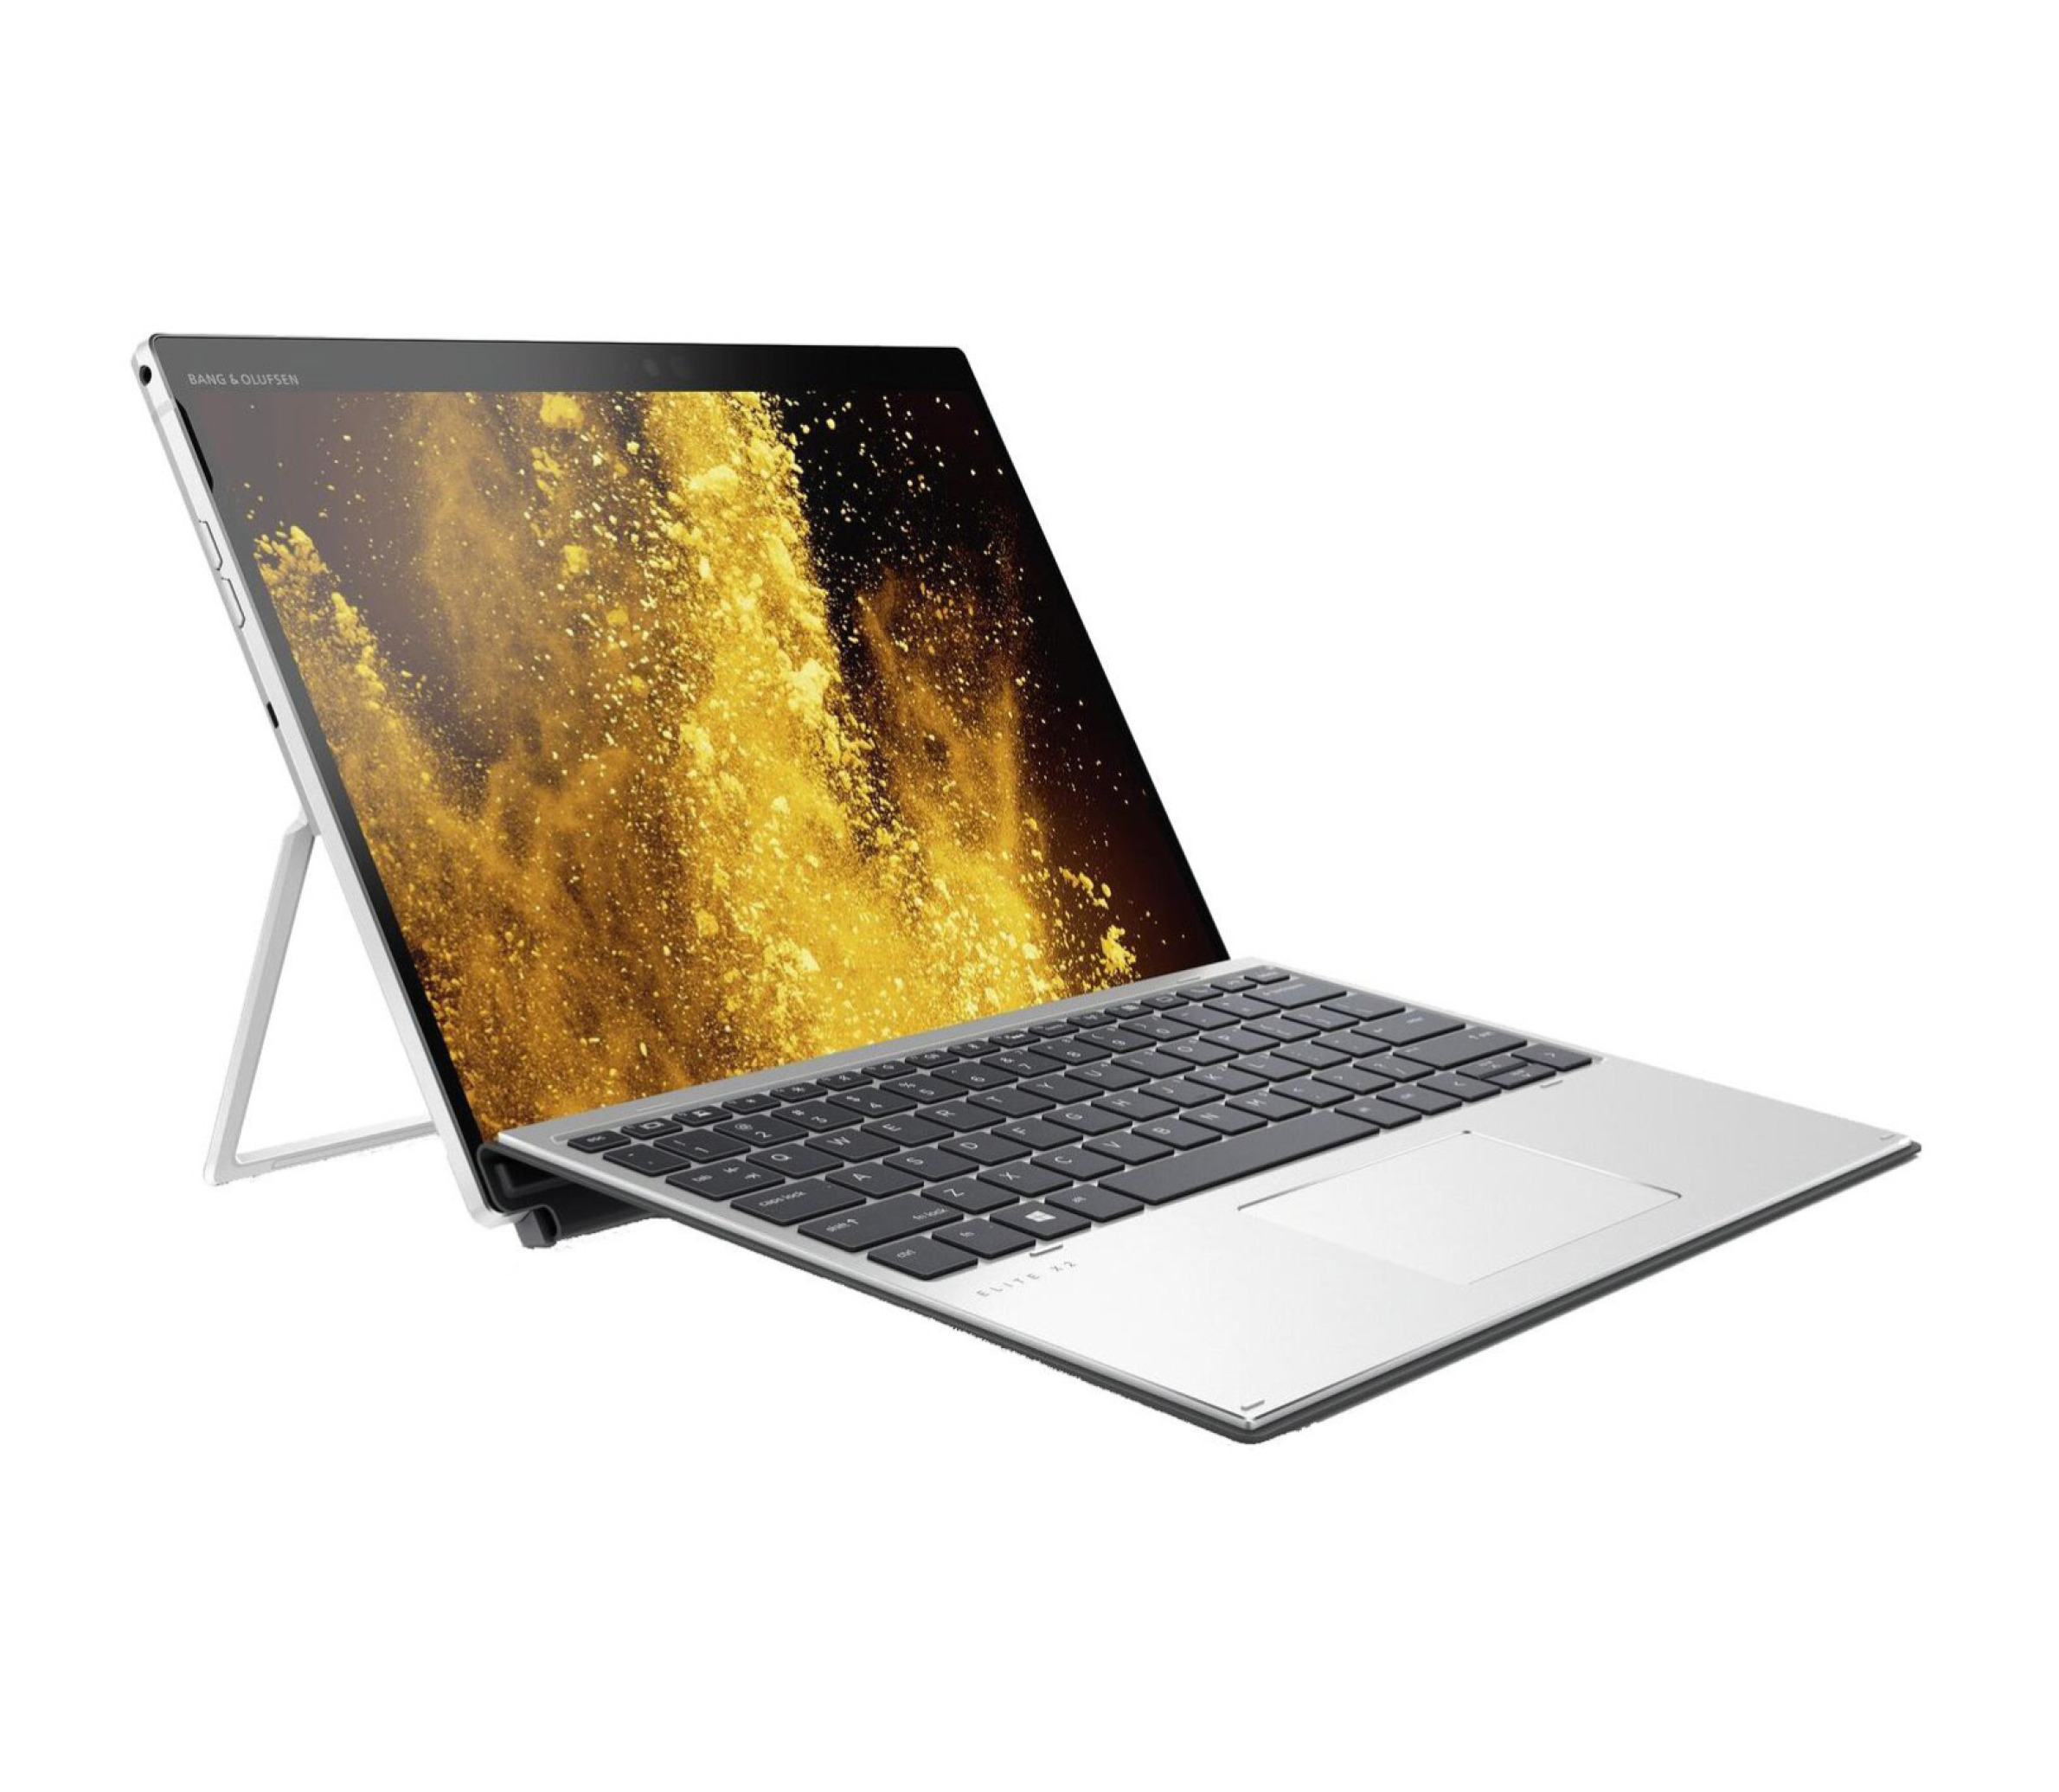  لپ تاپ اچ پی HP Elite X2 G4 | لاکچری لپتاپ 